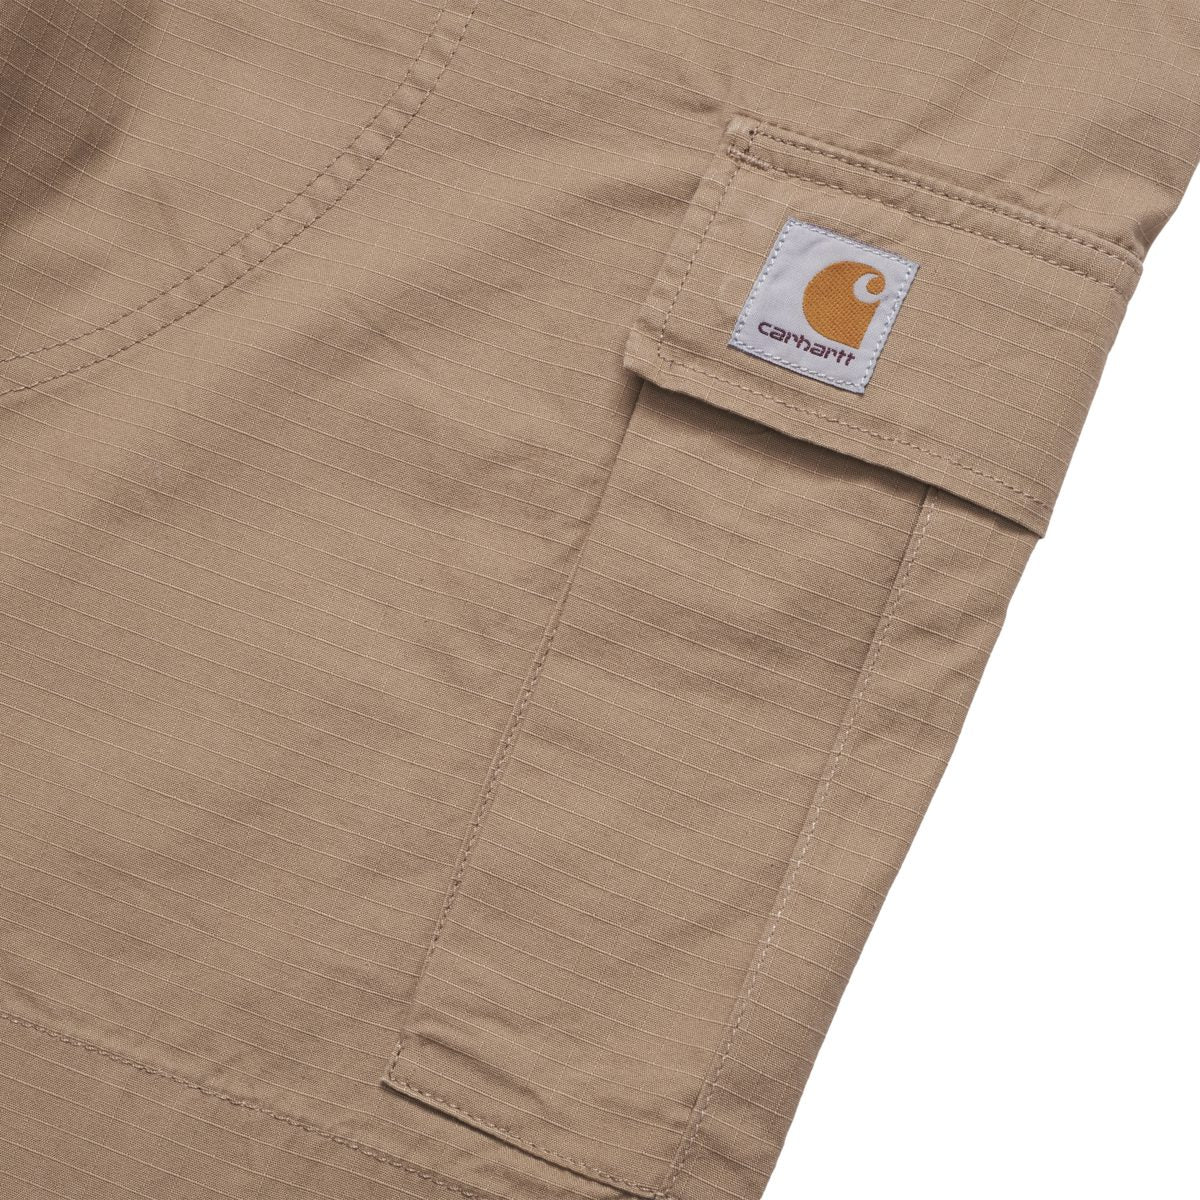 Cargo Shorts in farbe dunkelbeige mit Carhartt WIP Label an einer Seitentasche.